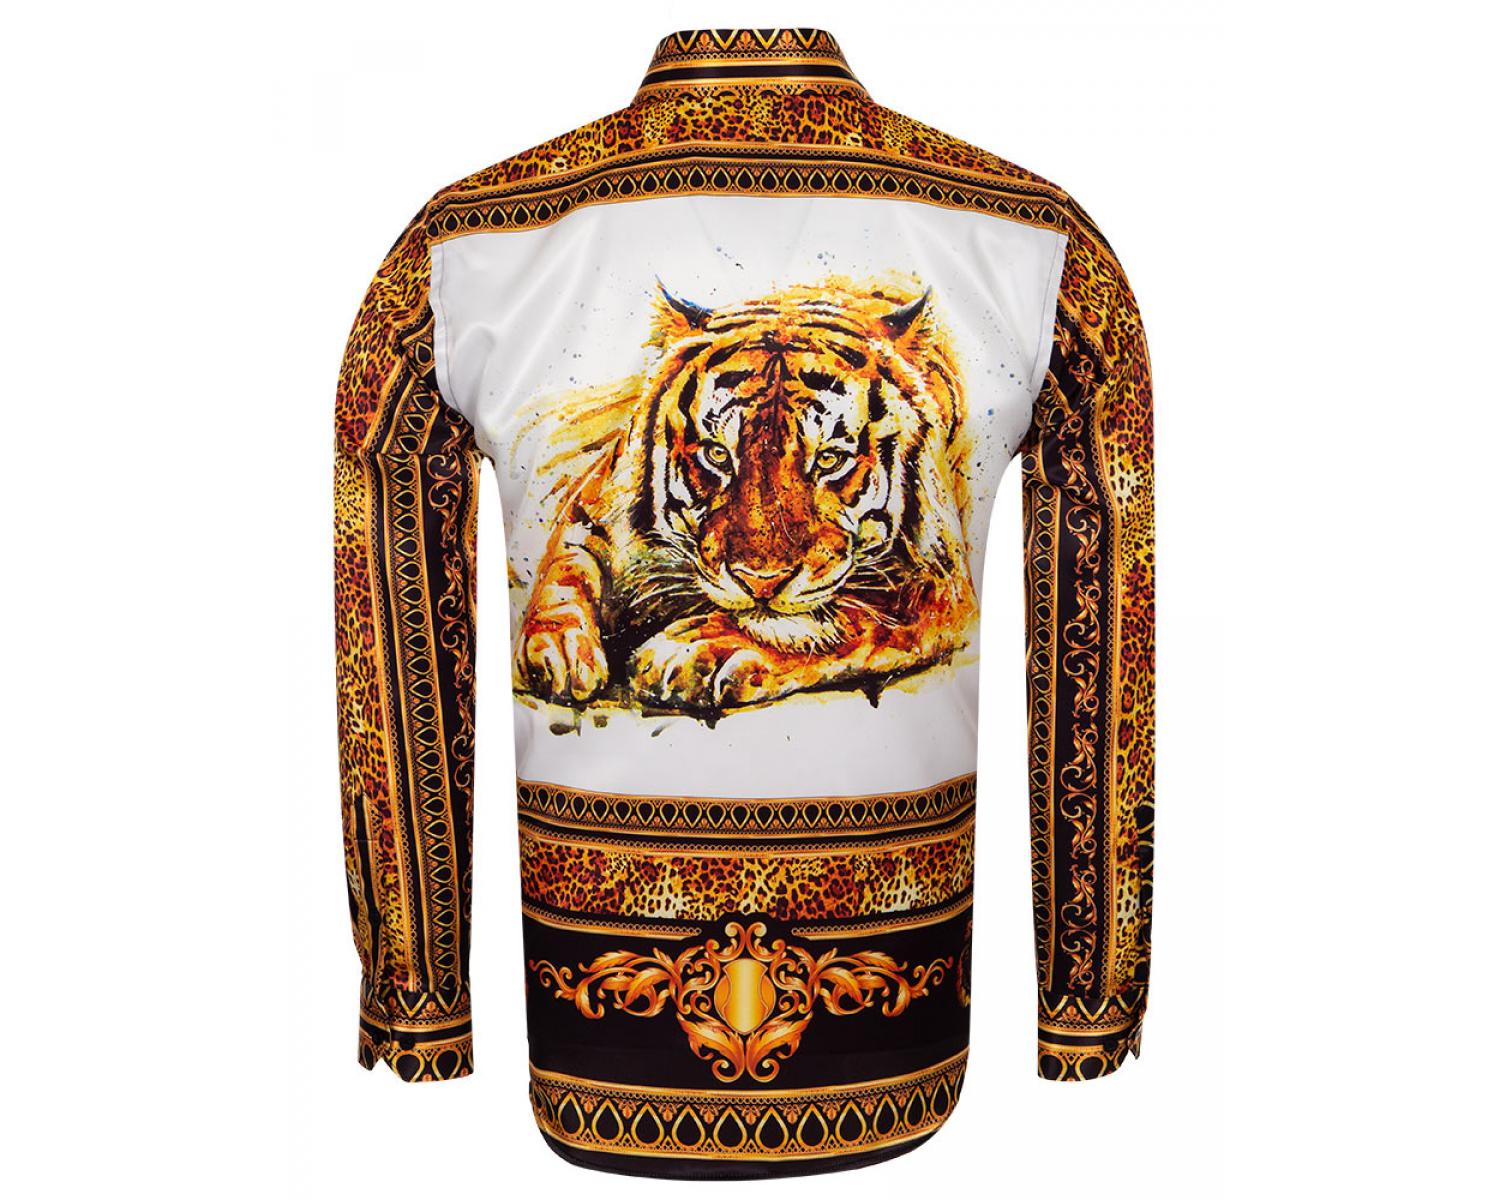 versace shirt tiger